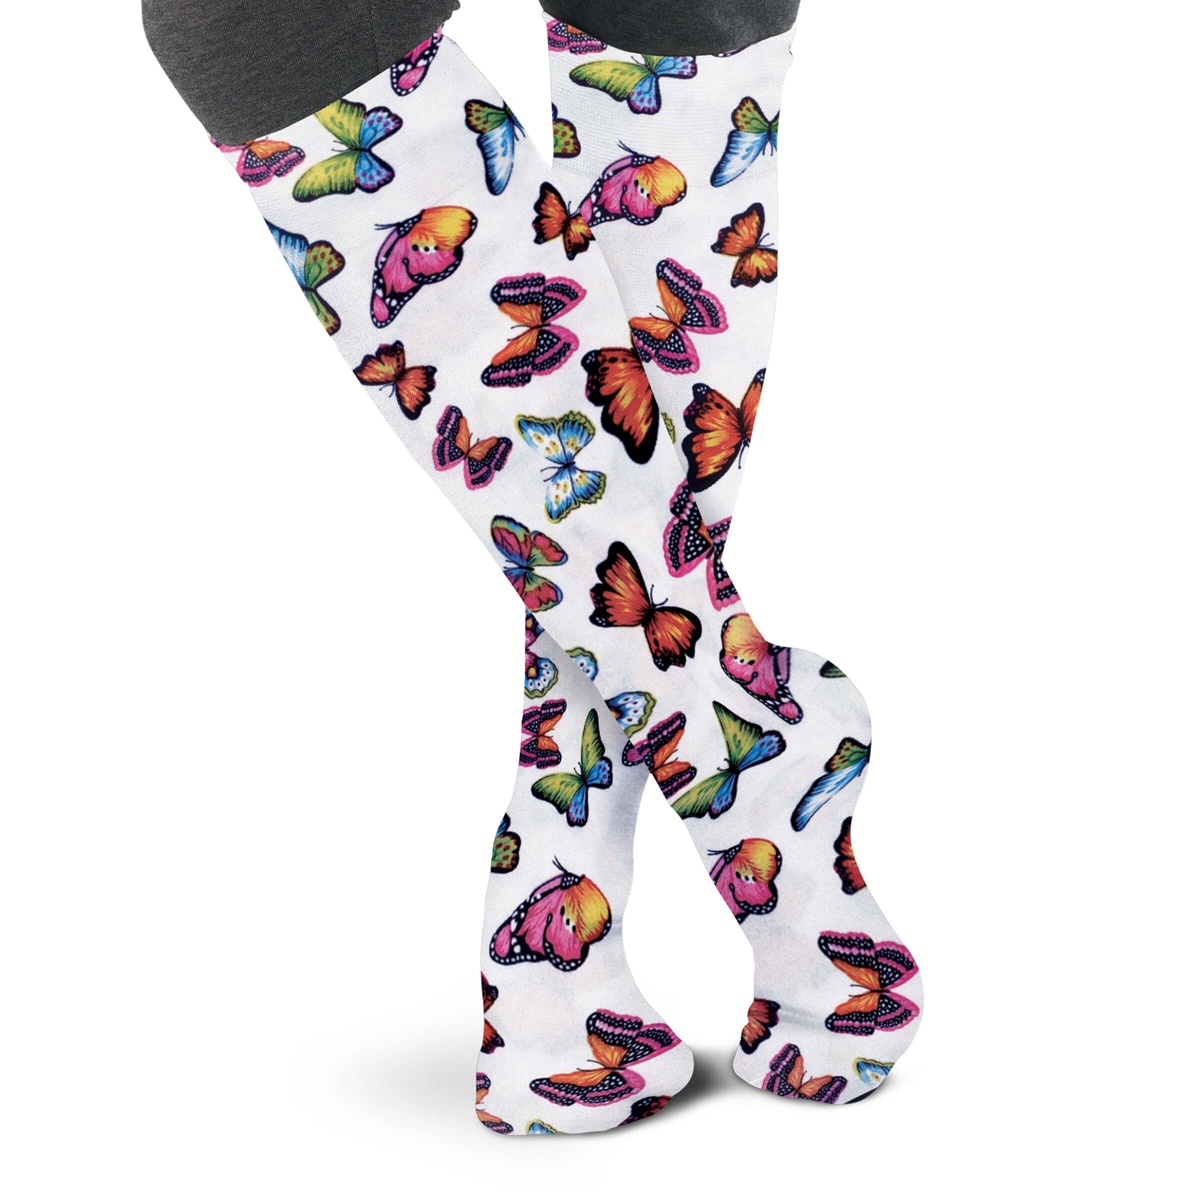 Ovation Ladies Patterned Zocks Boot Socks